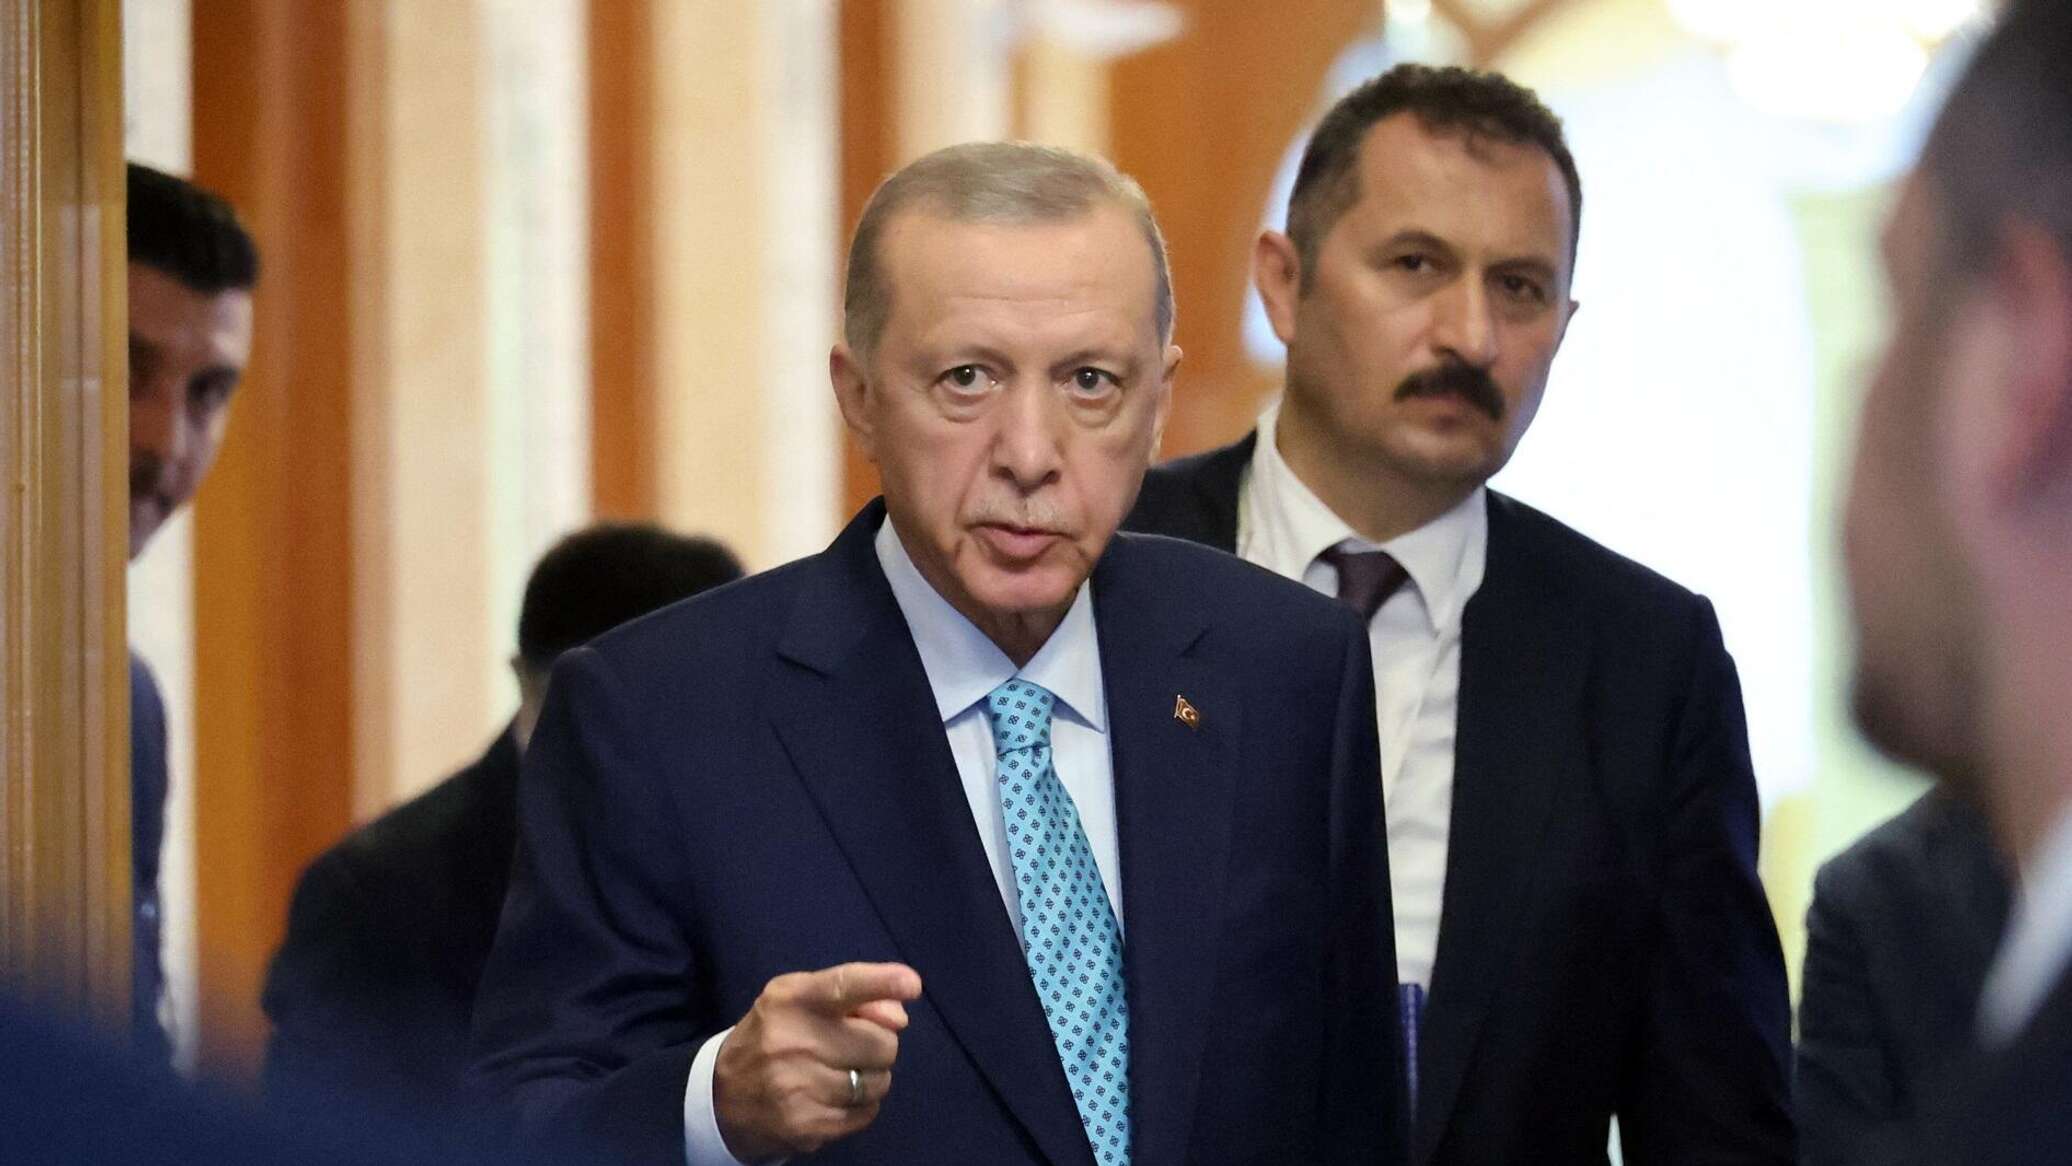 أردوغان يدين إسرائيل "بالإرهاب" ويحث نتنياهو على الإقرار بحيازة "قنابل نووية"- عاجل